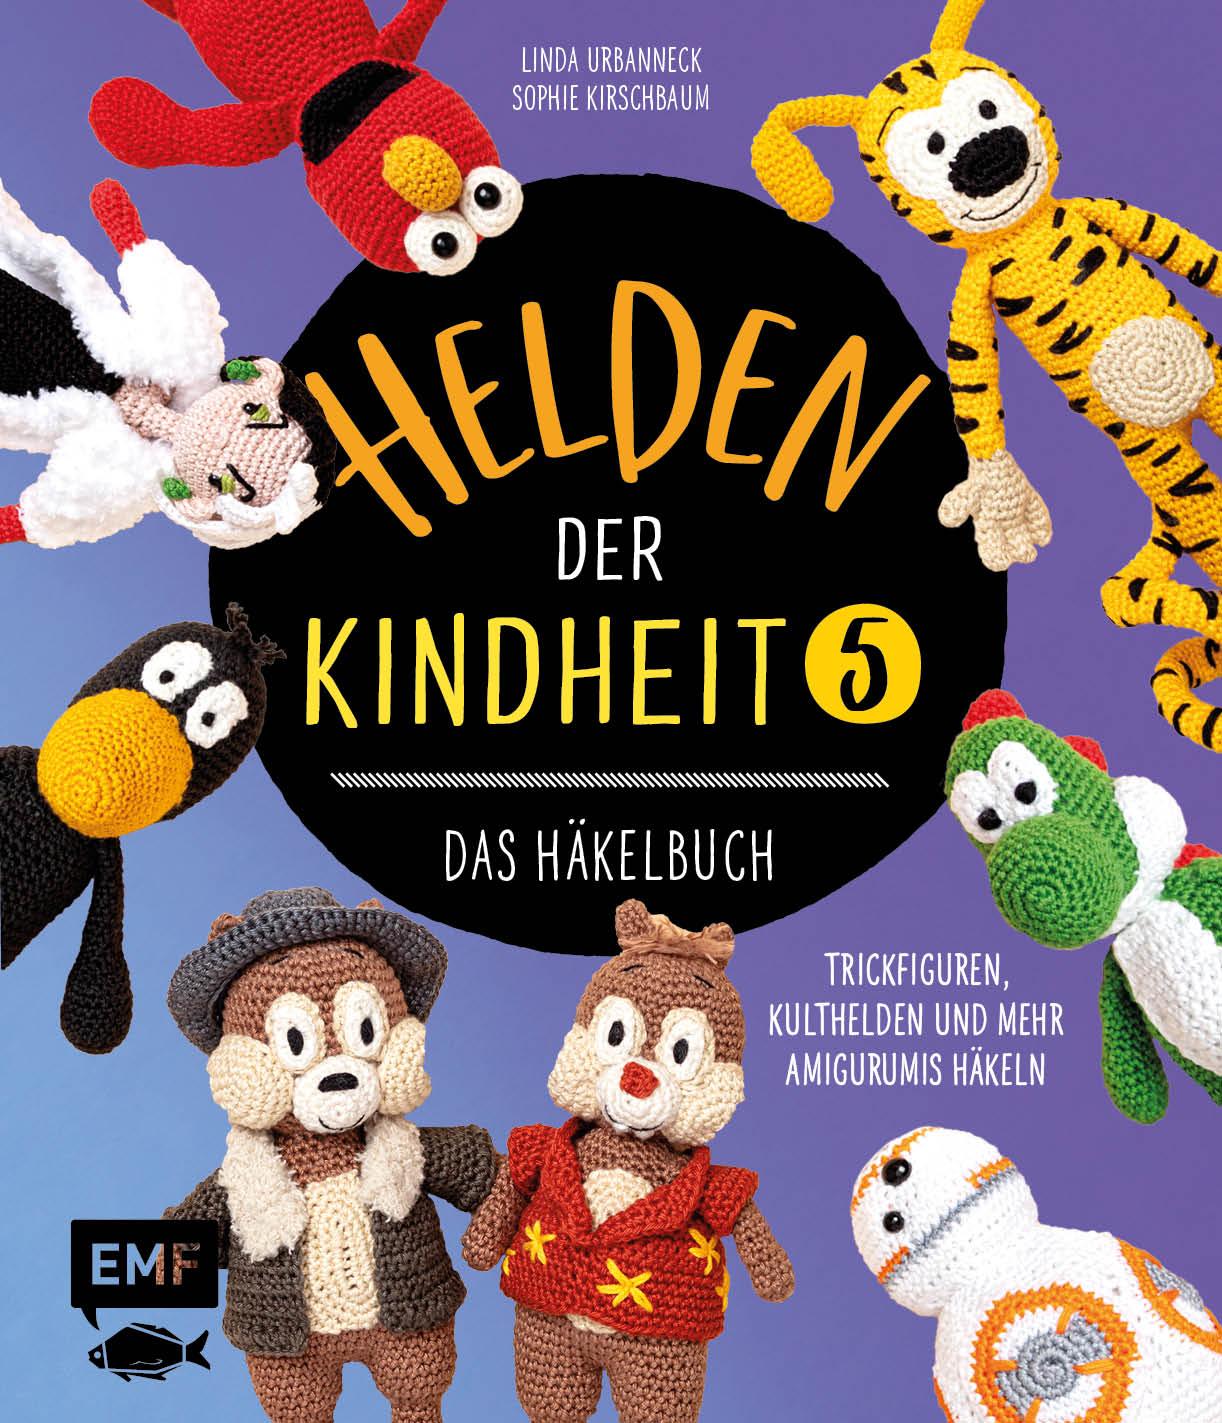 Knjiga Helden der Kindheit - Das Häkelbuch - Band 5 Sophie Kirschbaum